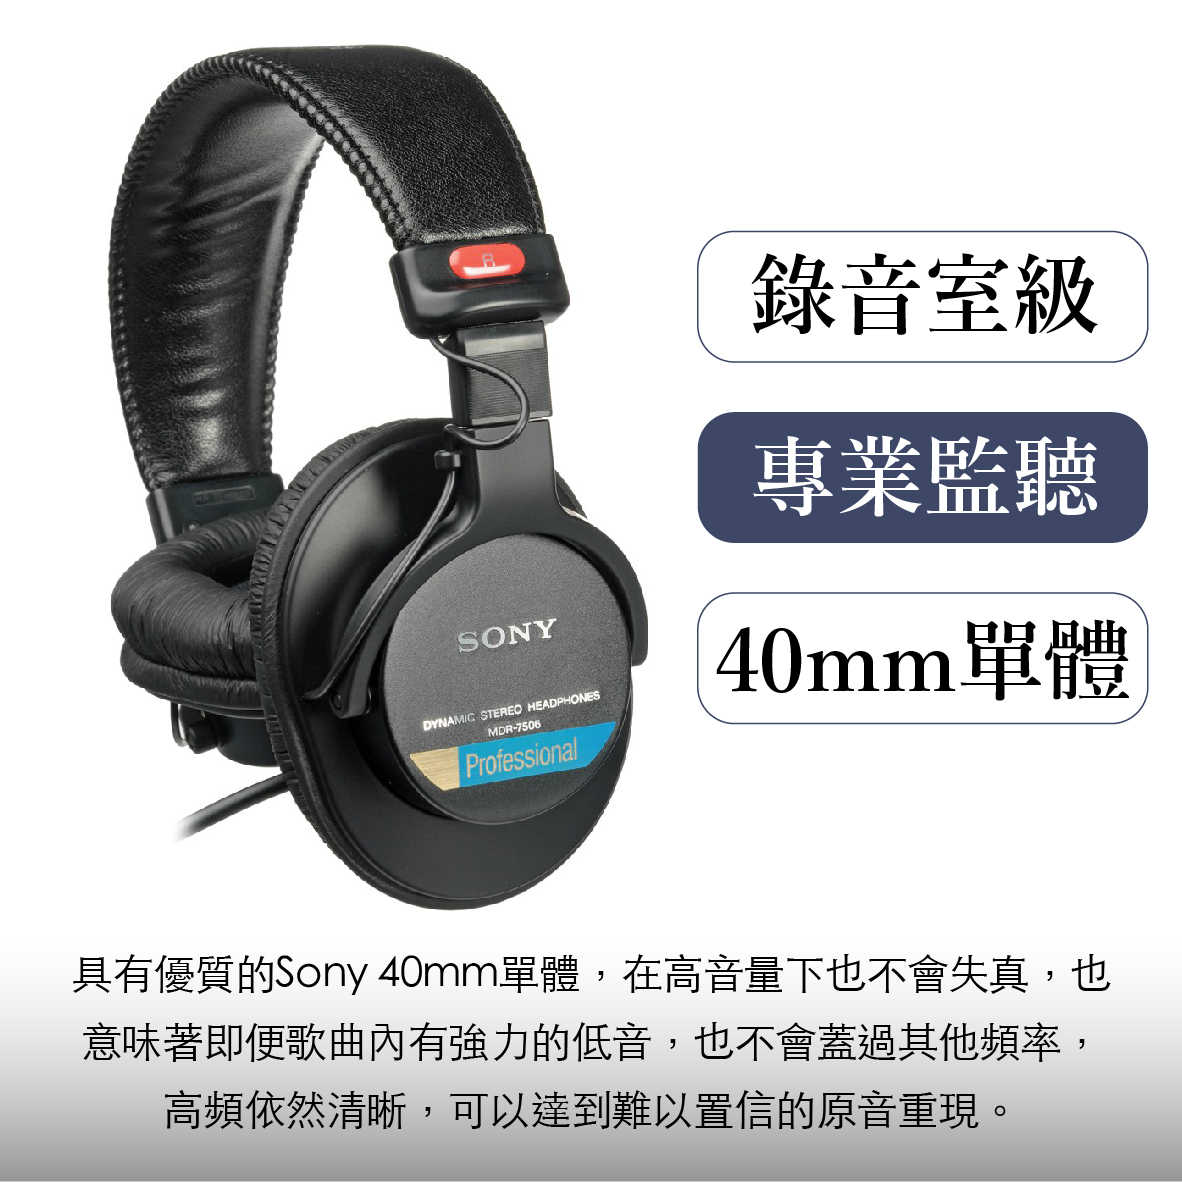 Sony 索尼 MDR-7506 專業 監聽耳機  | My Ear 耳機專門店